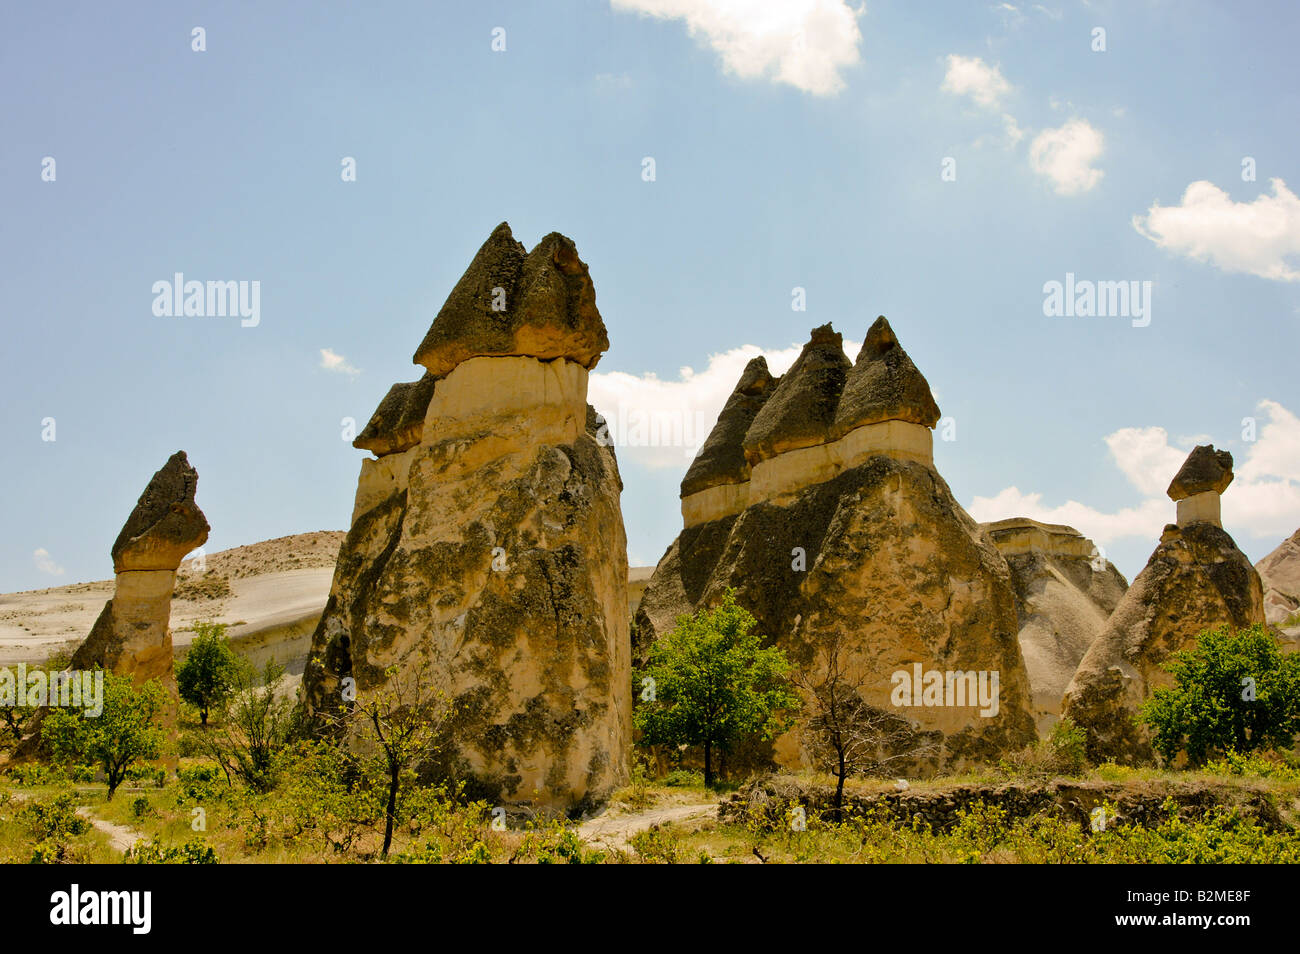 Une cheminée de fée est une formation de roche de forme conique, que l'on trouve généralement dans la région de Cappadoce en Turquie. Banque D'Images